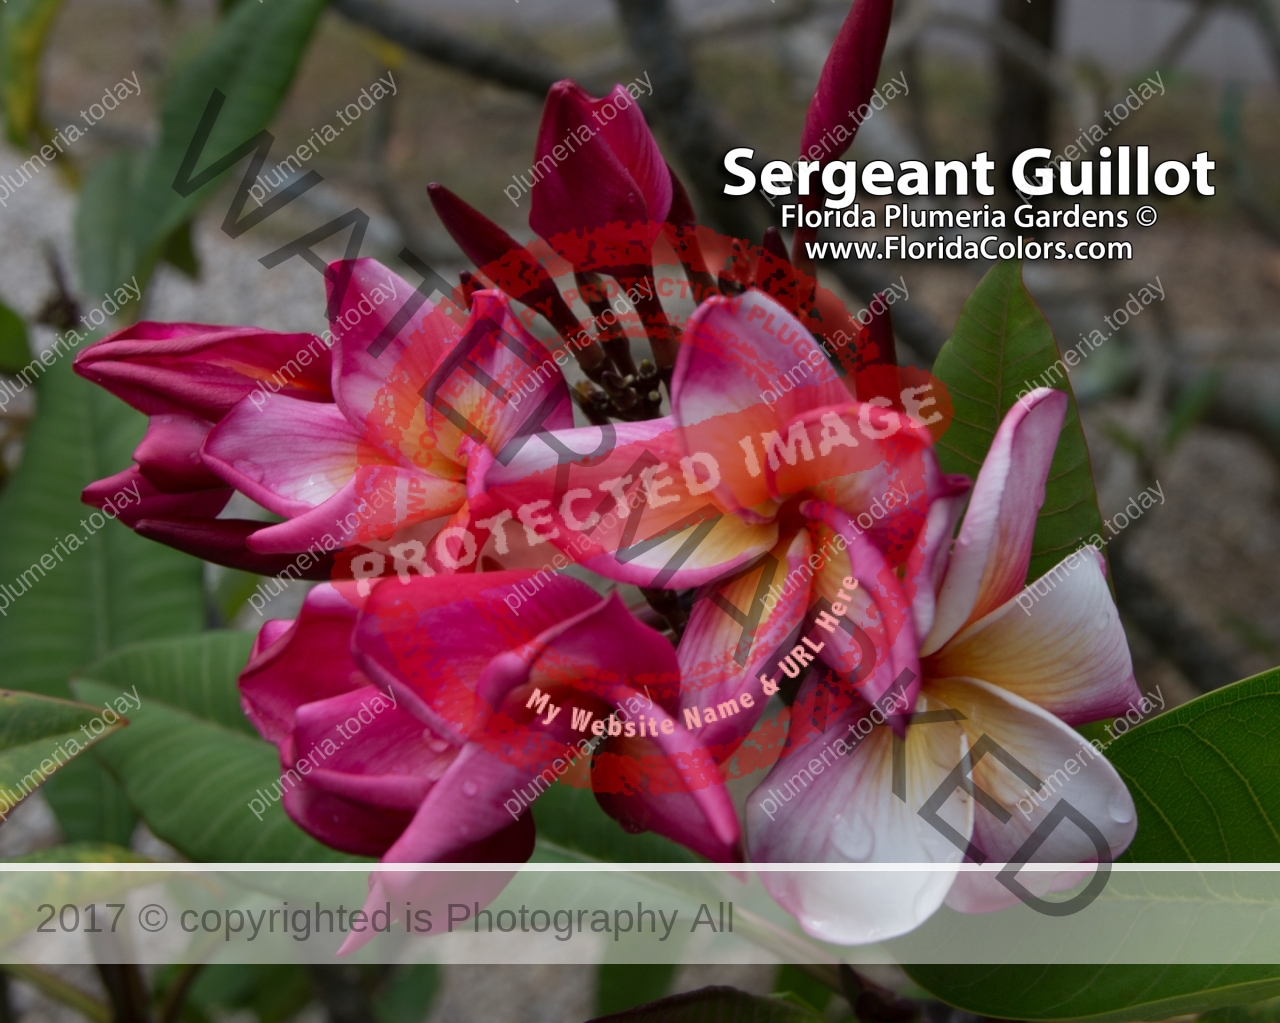 Sergeant-Guillot_0037.jpg